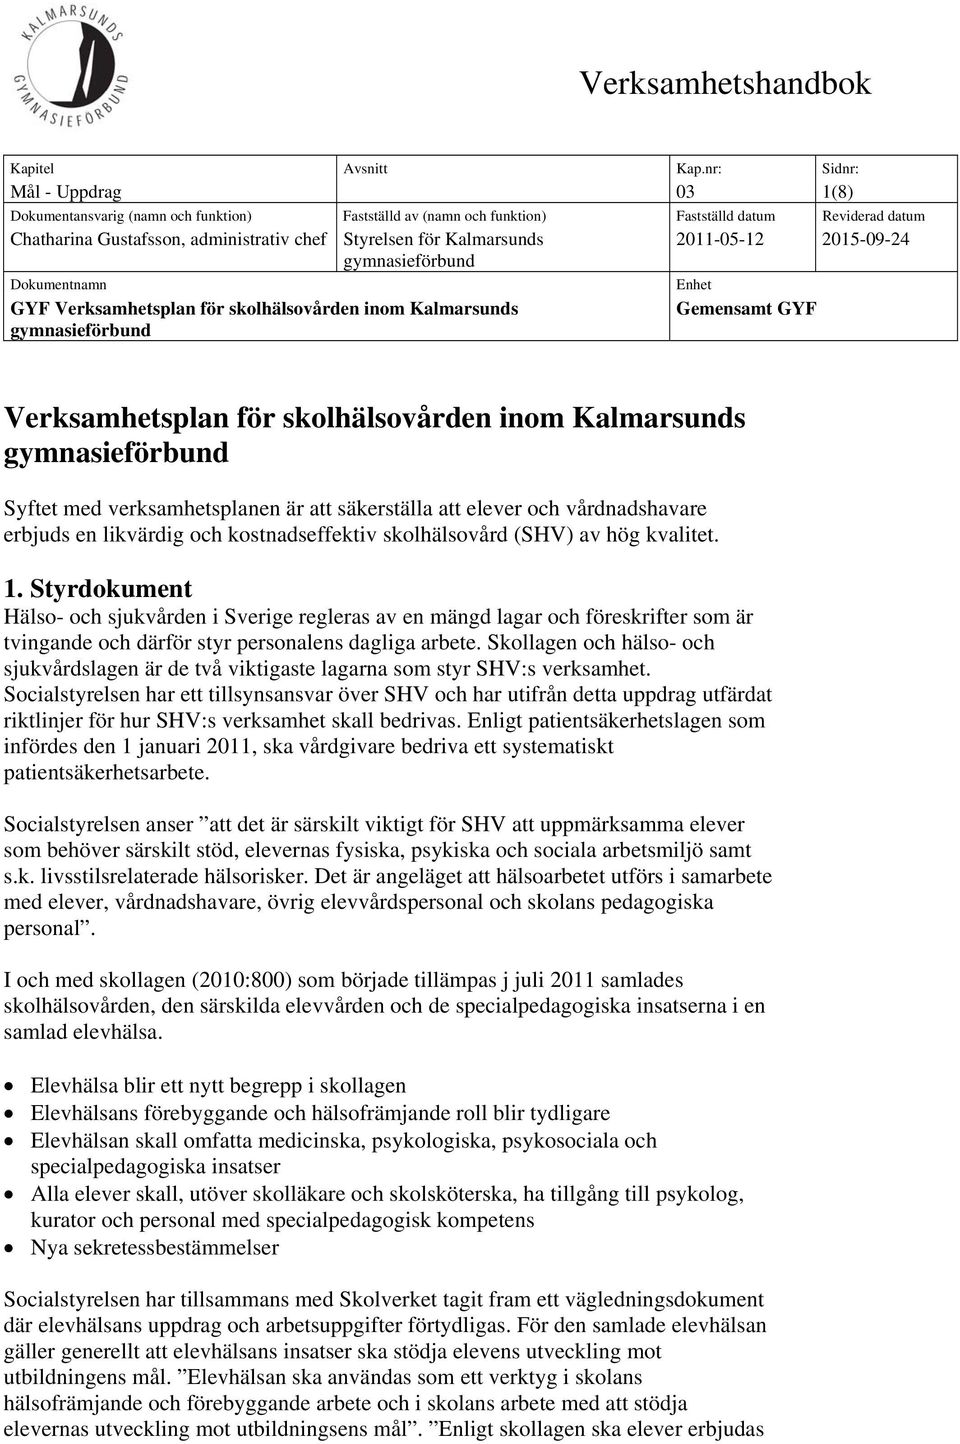 Kalmarsunds gymnasieförbund Dokumentnamn GYF Verksamhetsplan för skolhälsovården inom Kalmarsunds gymnasieförbund 2011-05-12 2015-09-24 Enhet Gemensamt GYF Verksamhetsplan för skolhälsovården inom